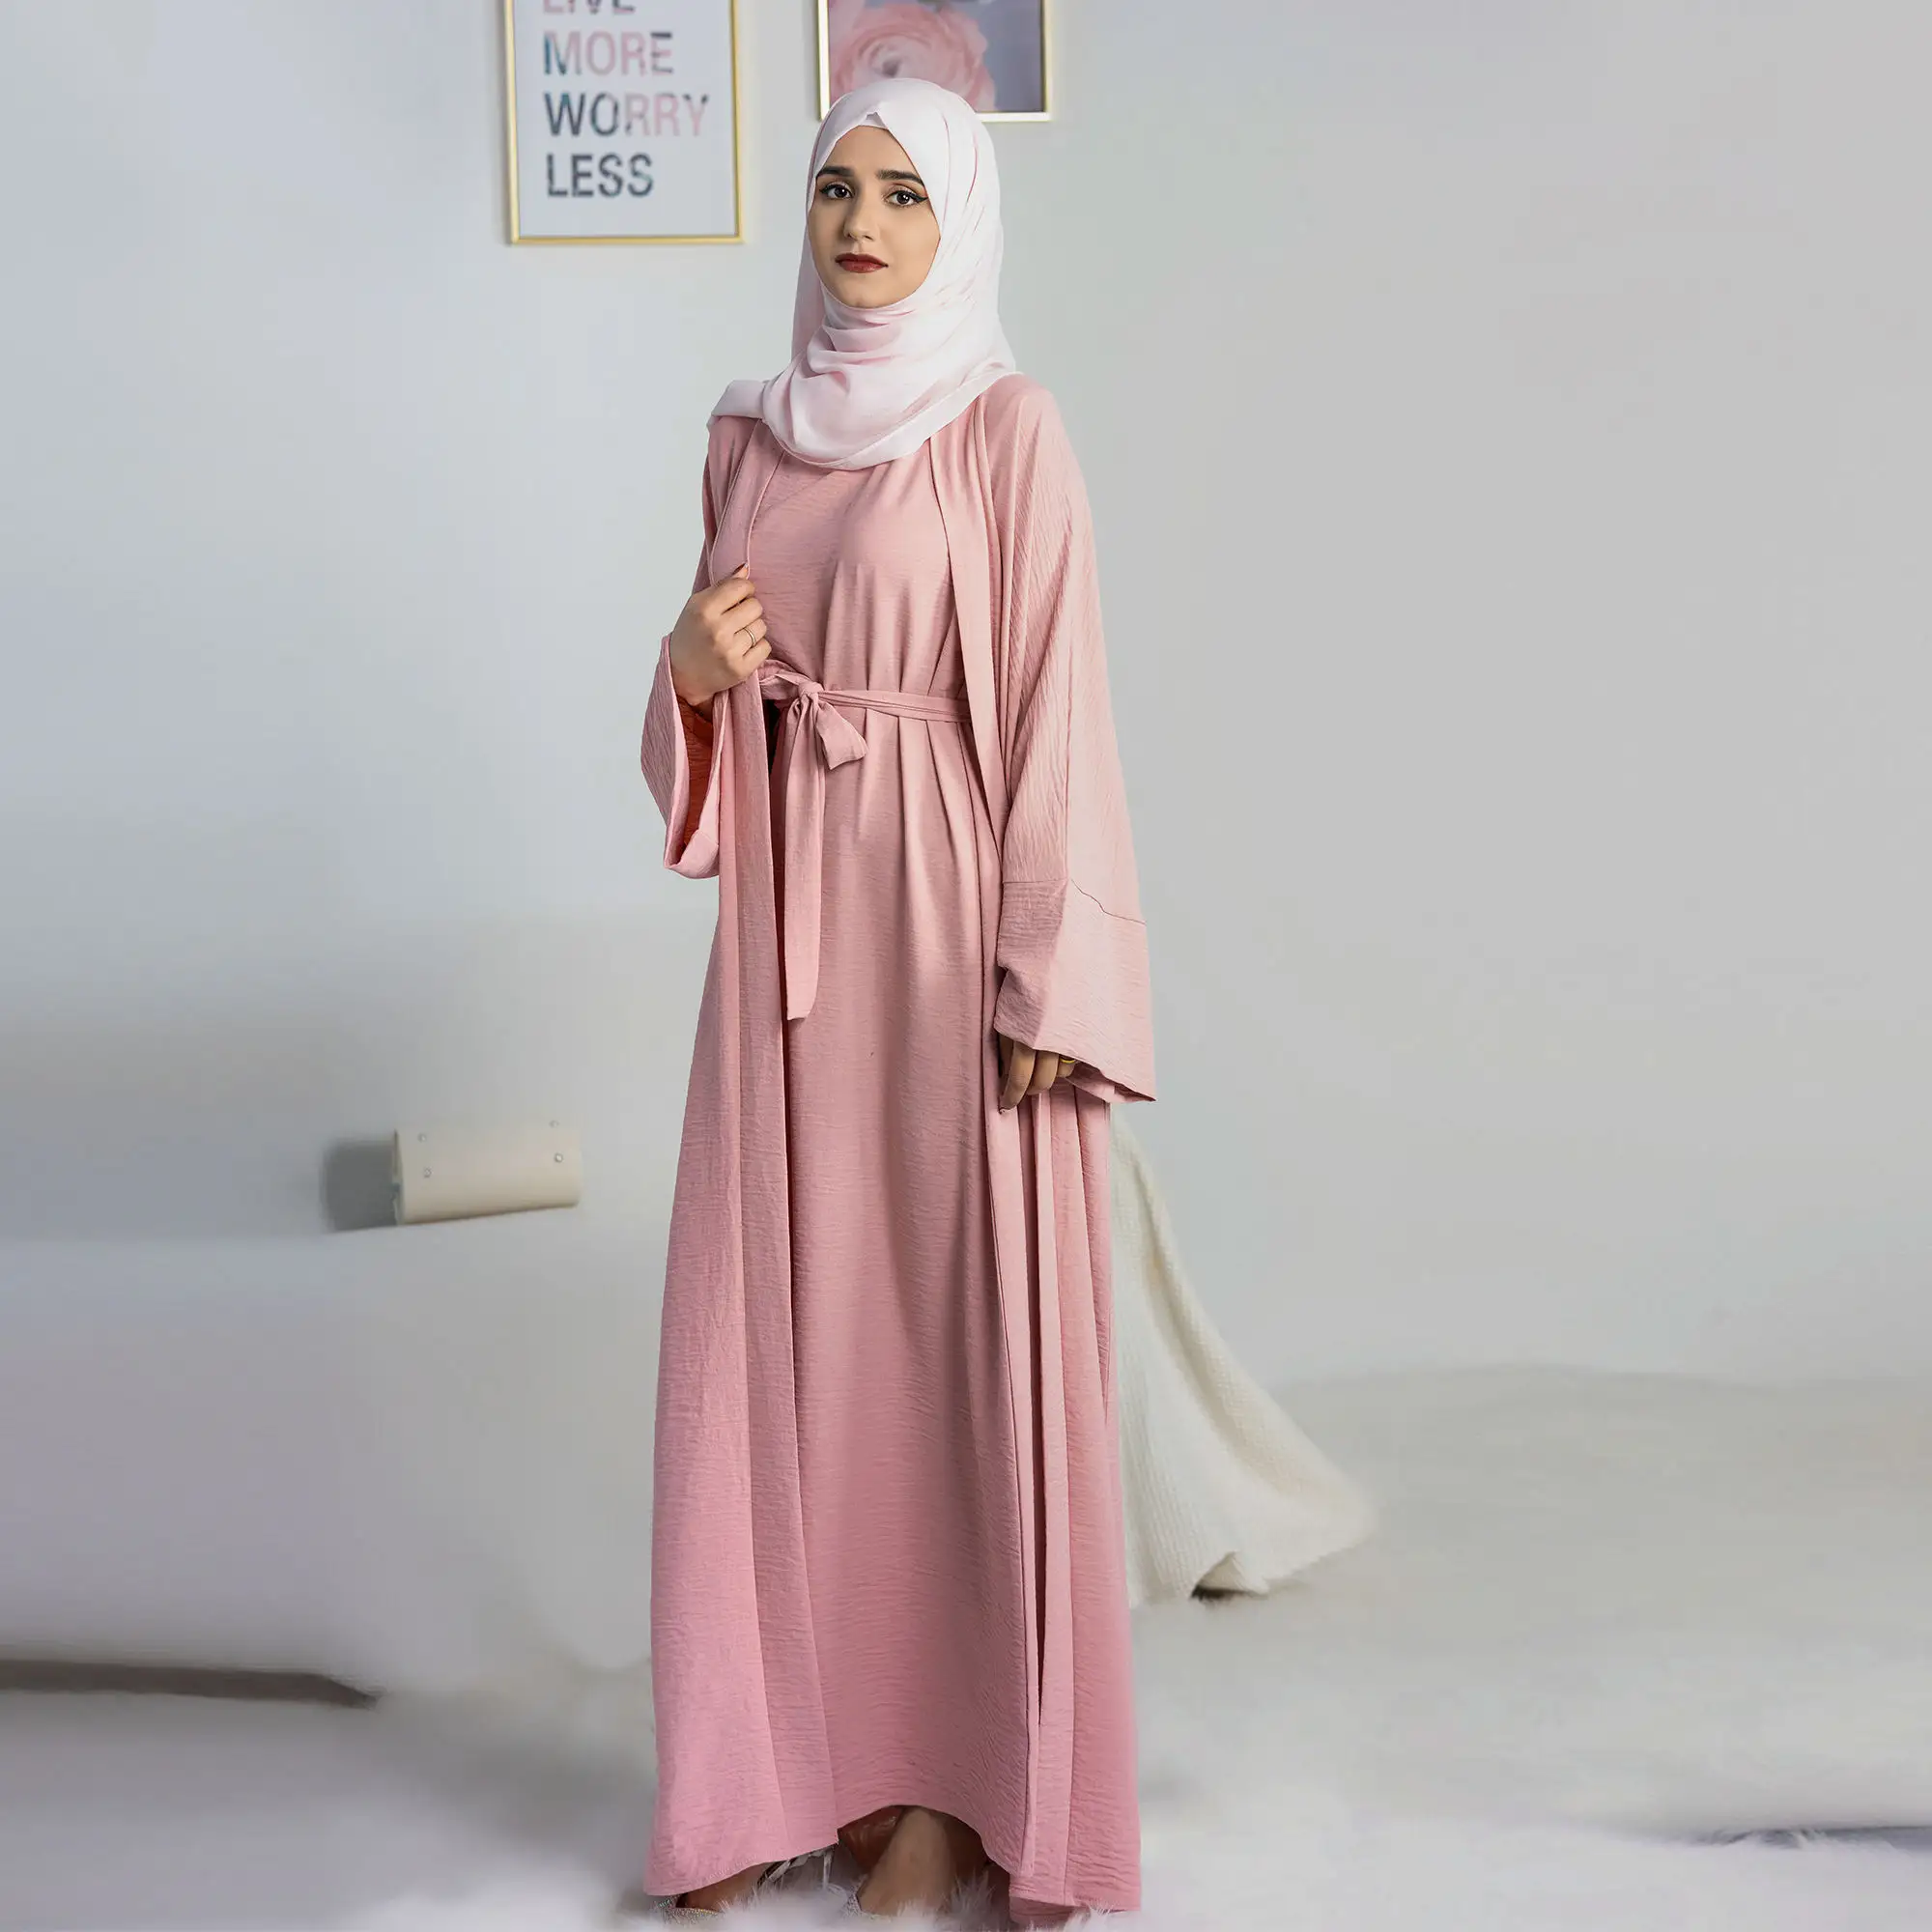 Sıcak satış 2 adet Set islam giyim Dubai Abaya müslüman elbise müslüman kadınlar için açık Abaya tasarımlar